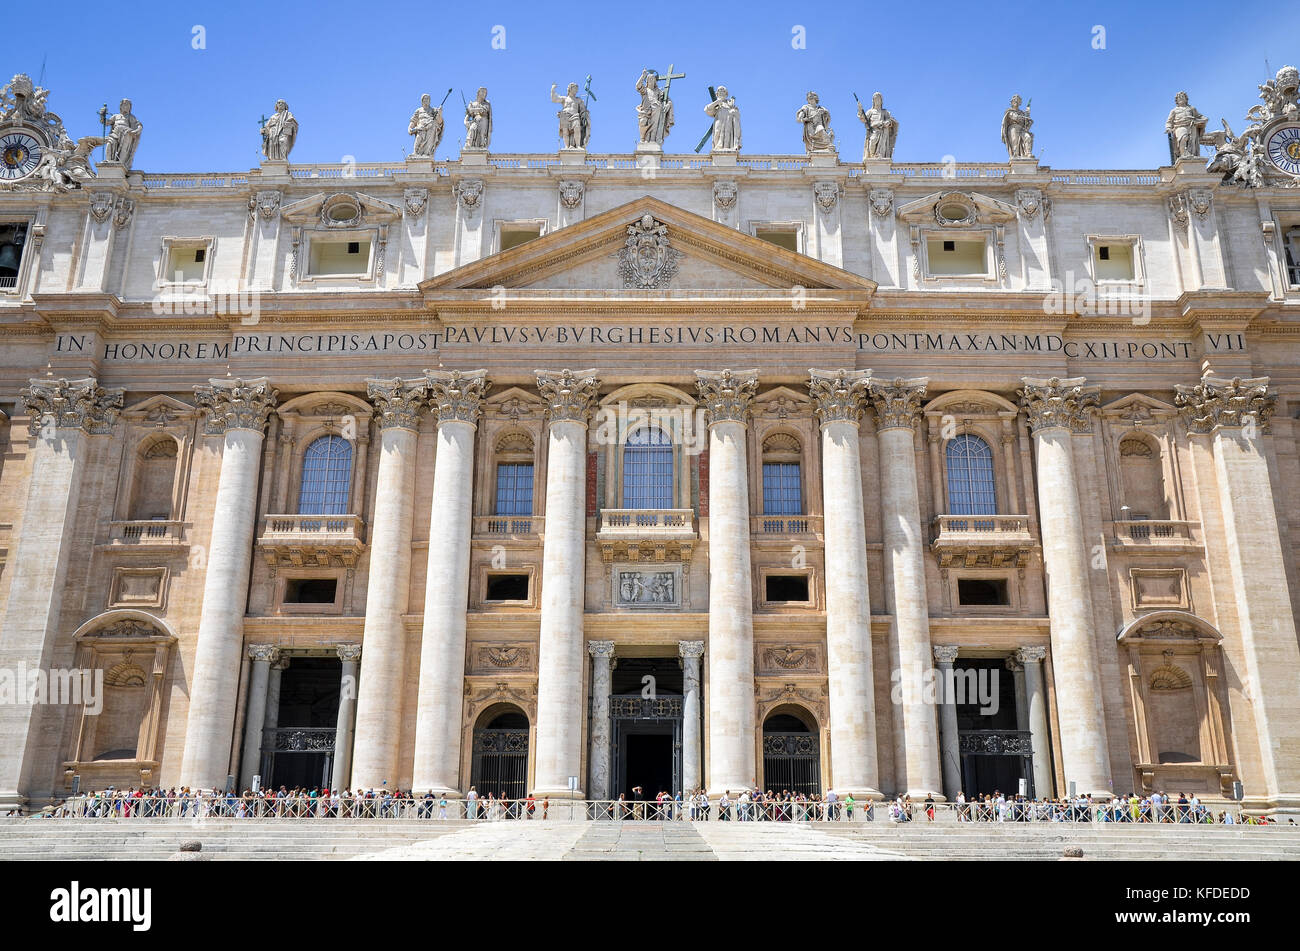 La Basílica de San Pedro en Roma, la arquitectura del Renacimiento italiano, y el sitio del patrimonio mundial de la UNESCO. Su fachada con columnas y estatuas de inscripción religio Foto de stock